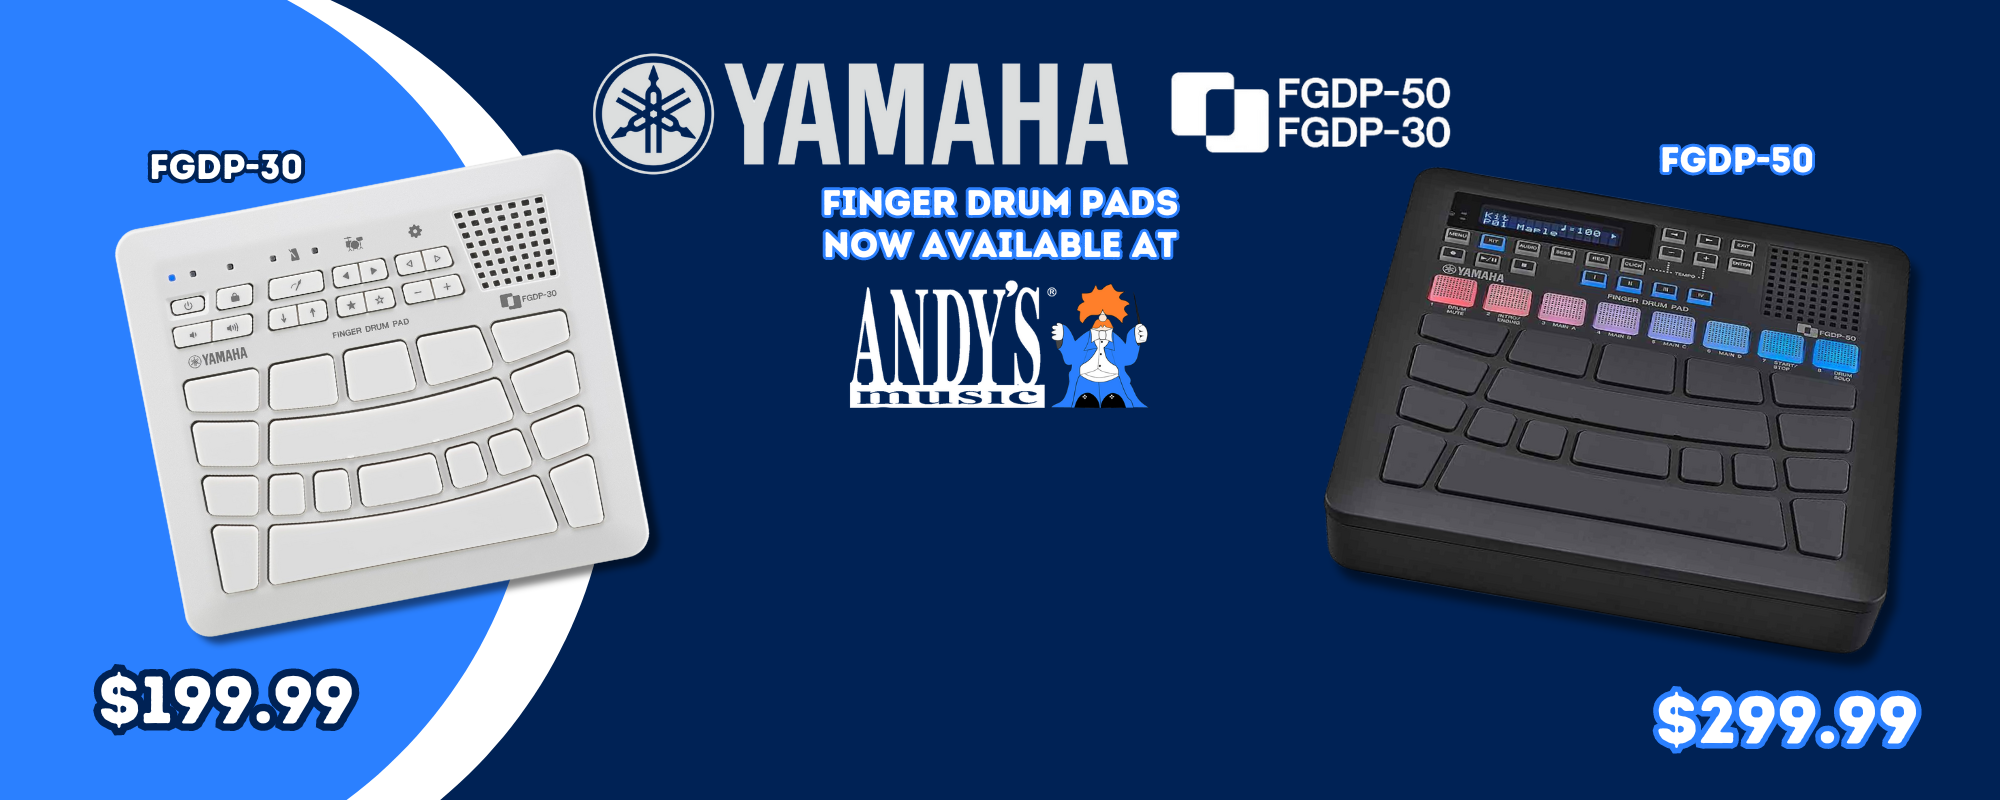 YAMAHA Finger Drum FGDP-50 and FGDP-30 Drum Machines